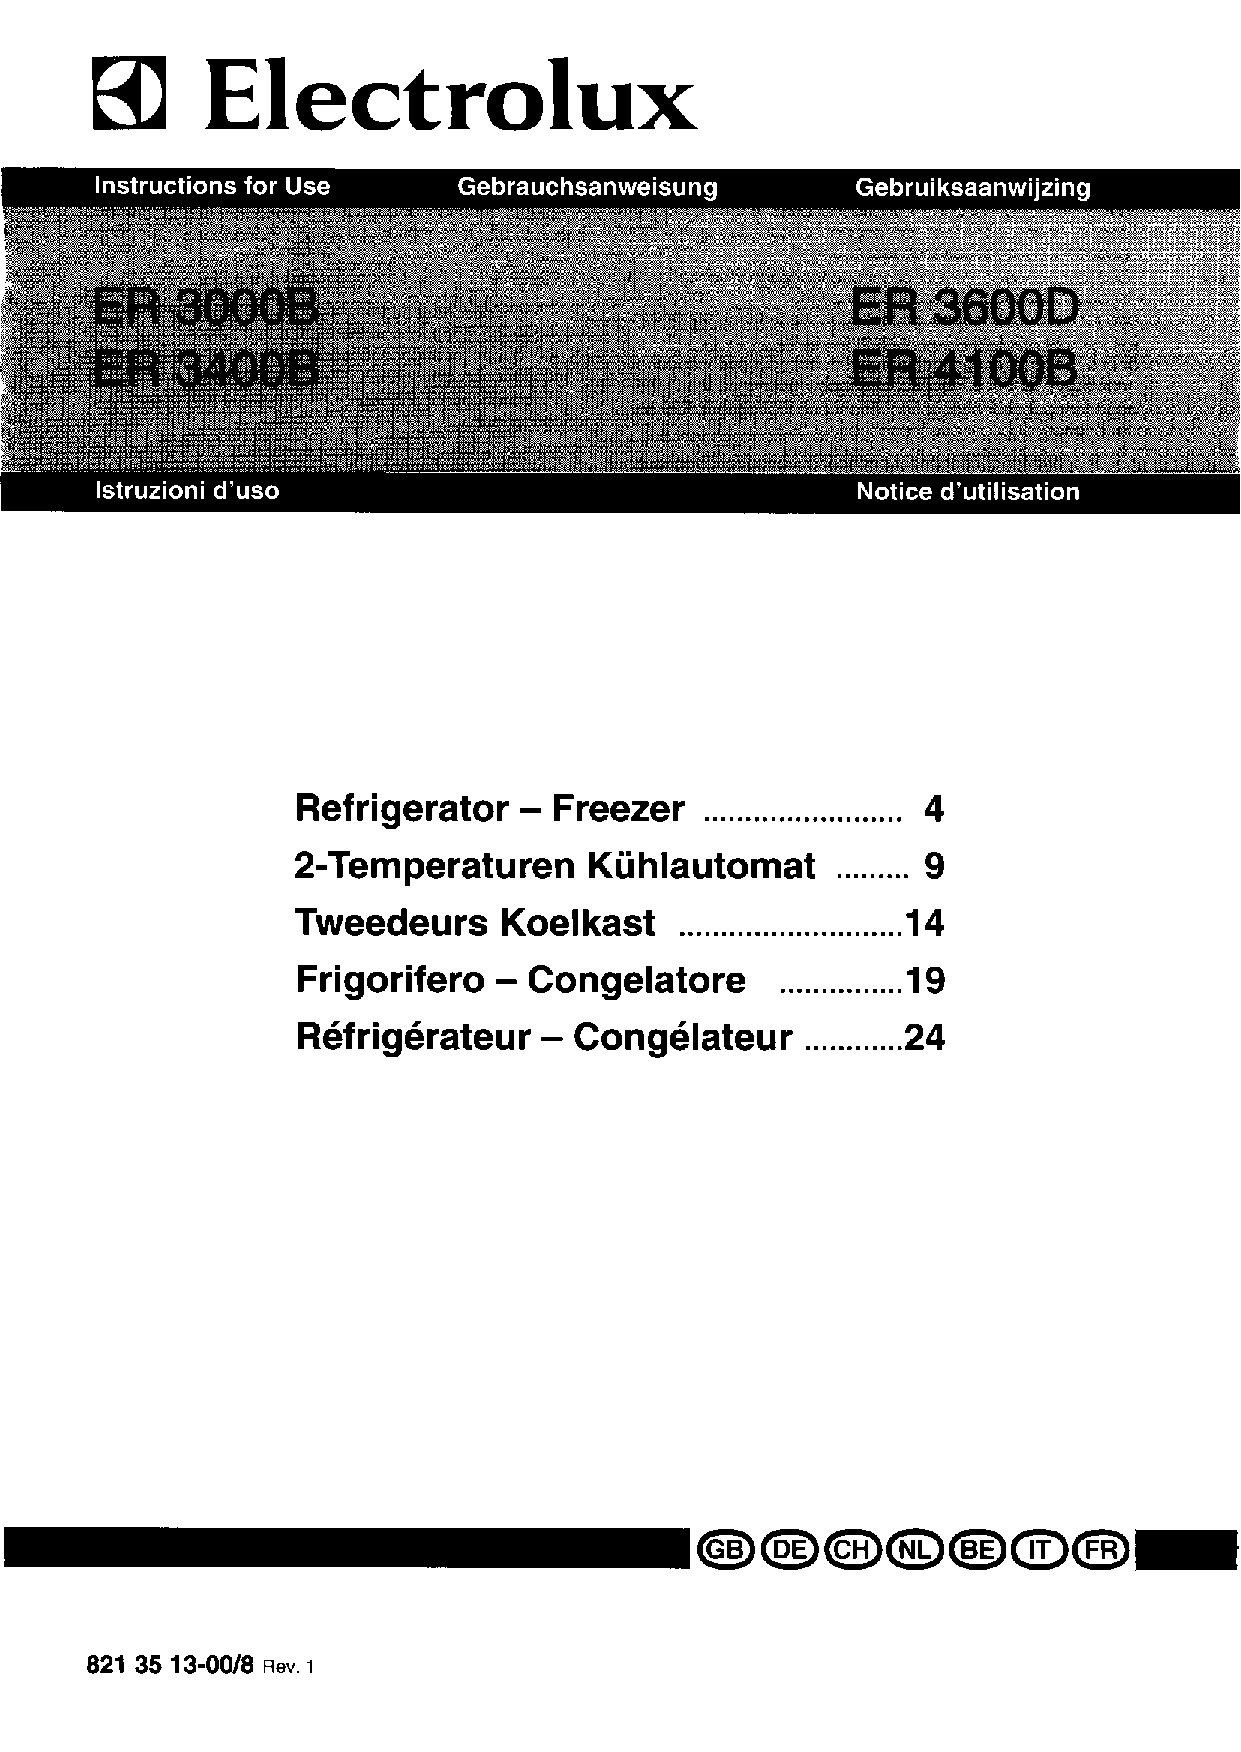 AEG-Electrolux ER3600D, ER3600B, ER3000B User Manual